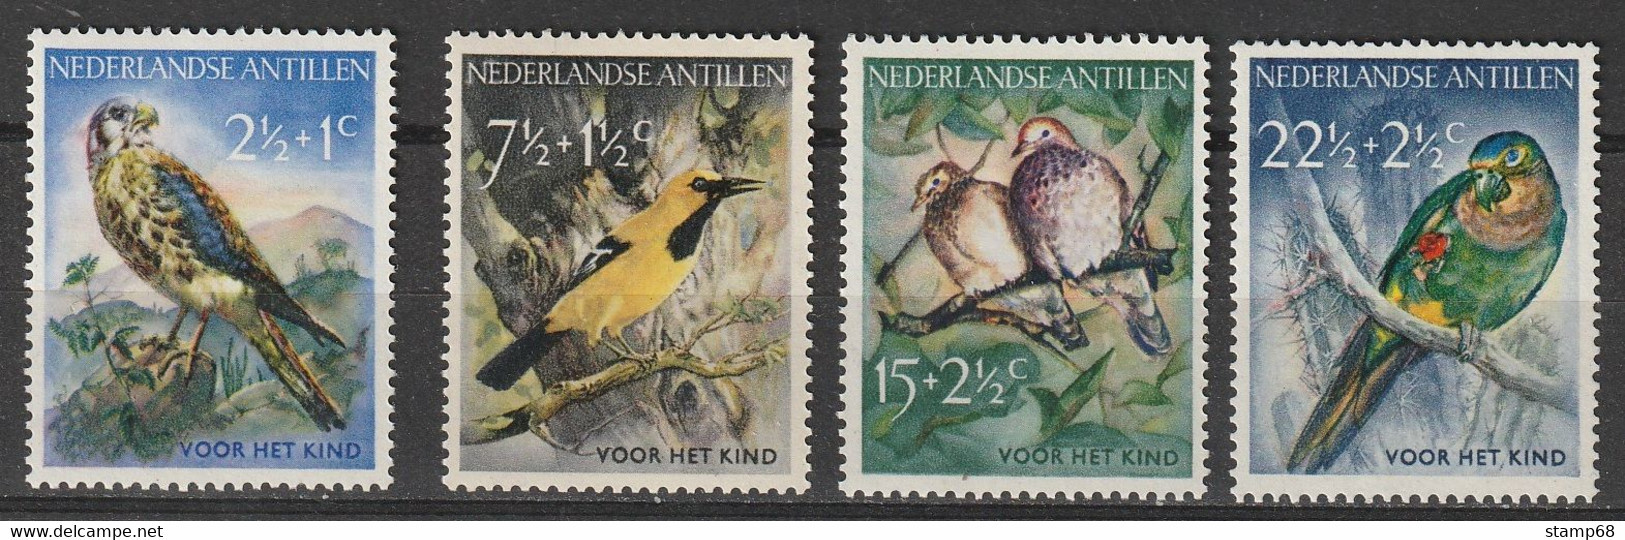 Nederlandse Antillen NVPH 271-74 Kinderzegels 1958 MNH Postfris Vogels Birds - Curaçao, Nederlandse Antillen, Aruba